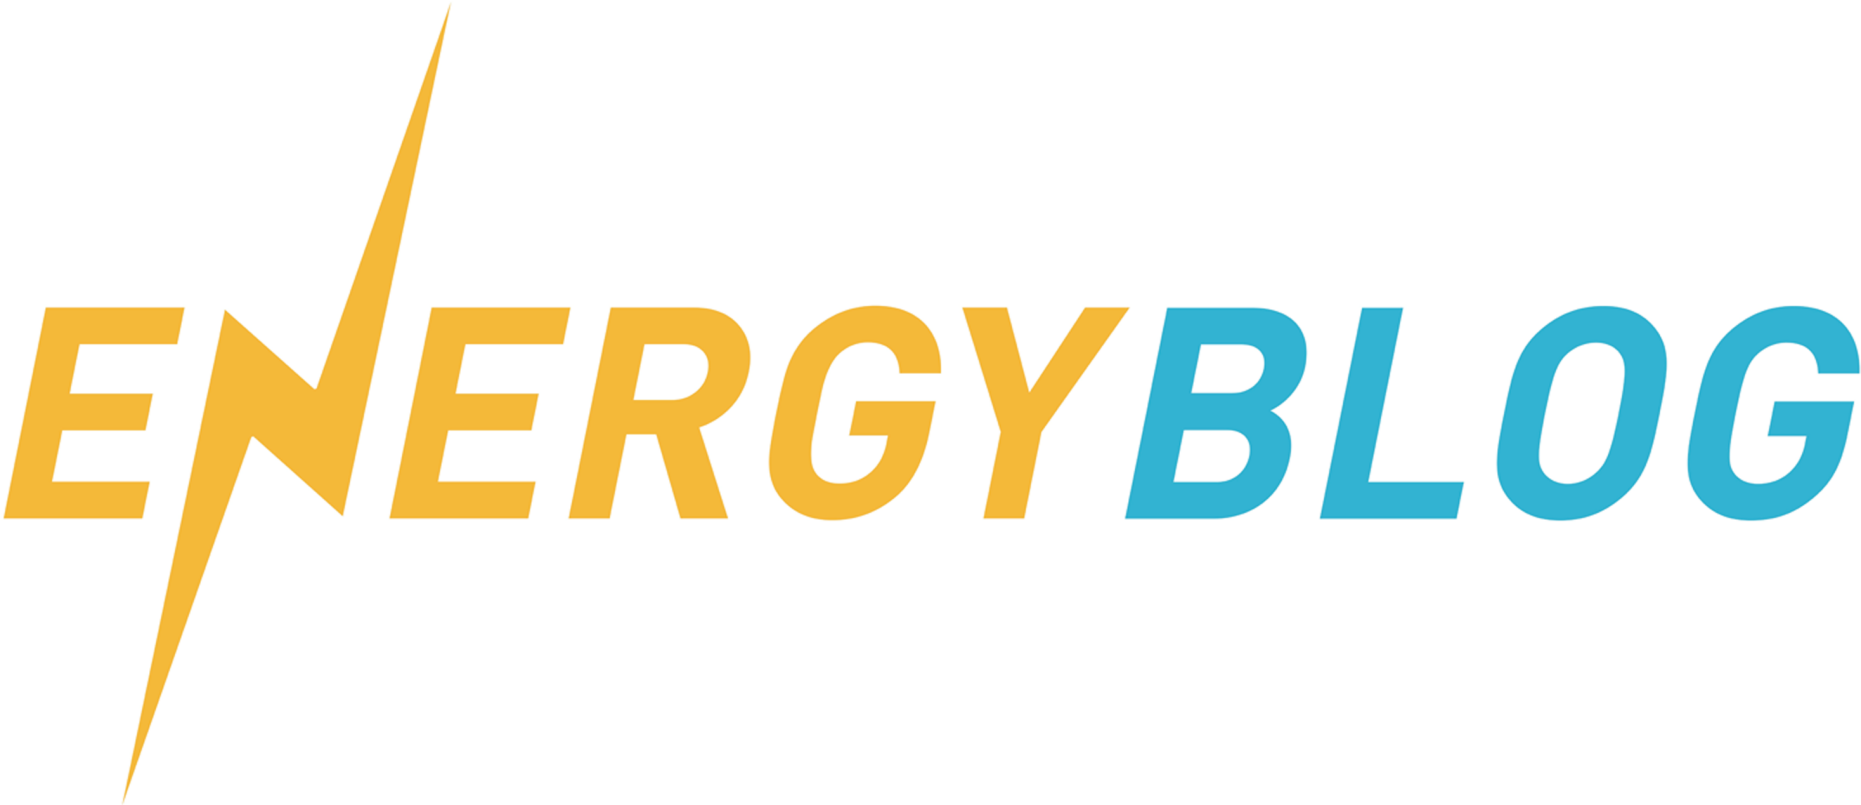 Energy Blog